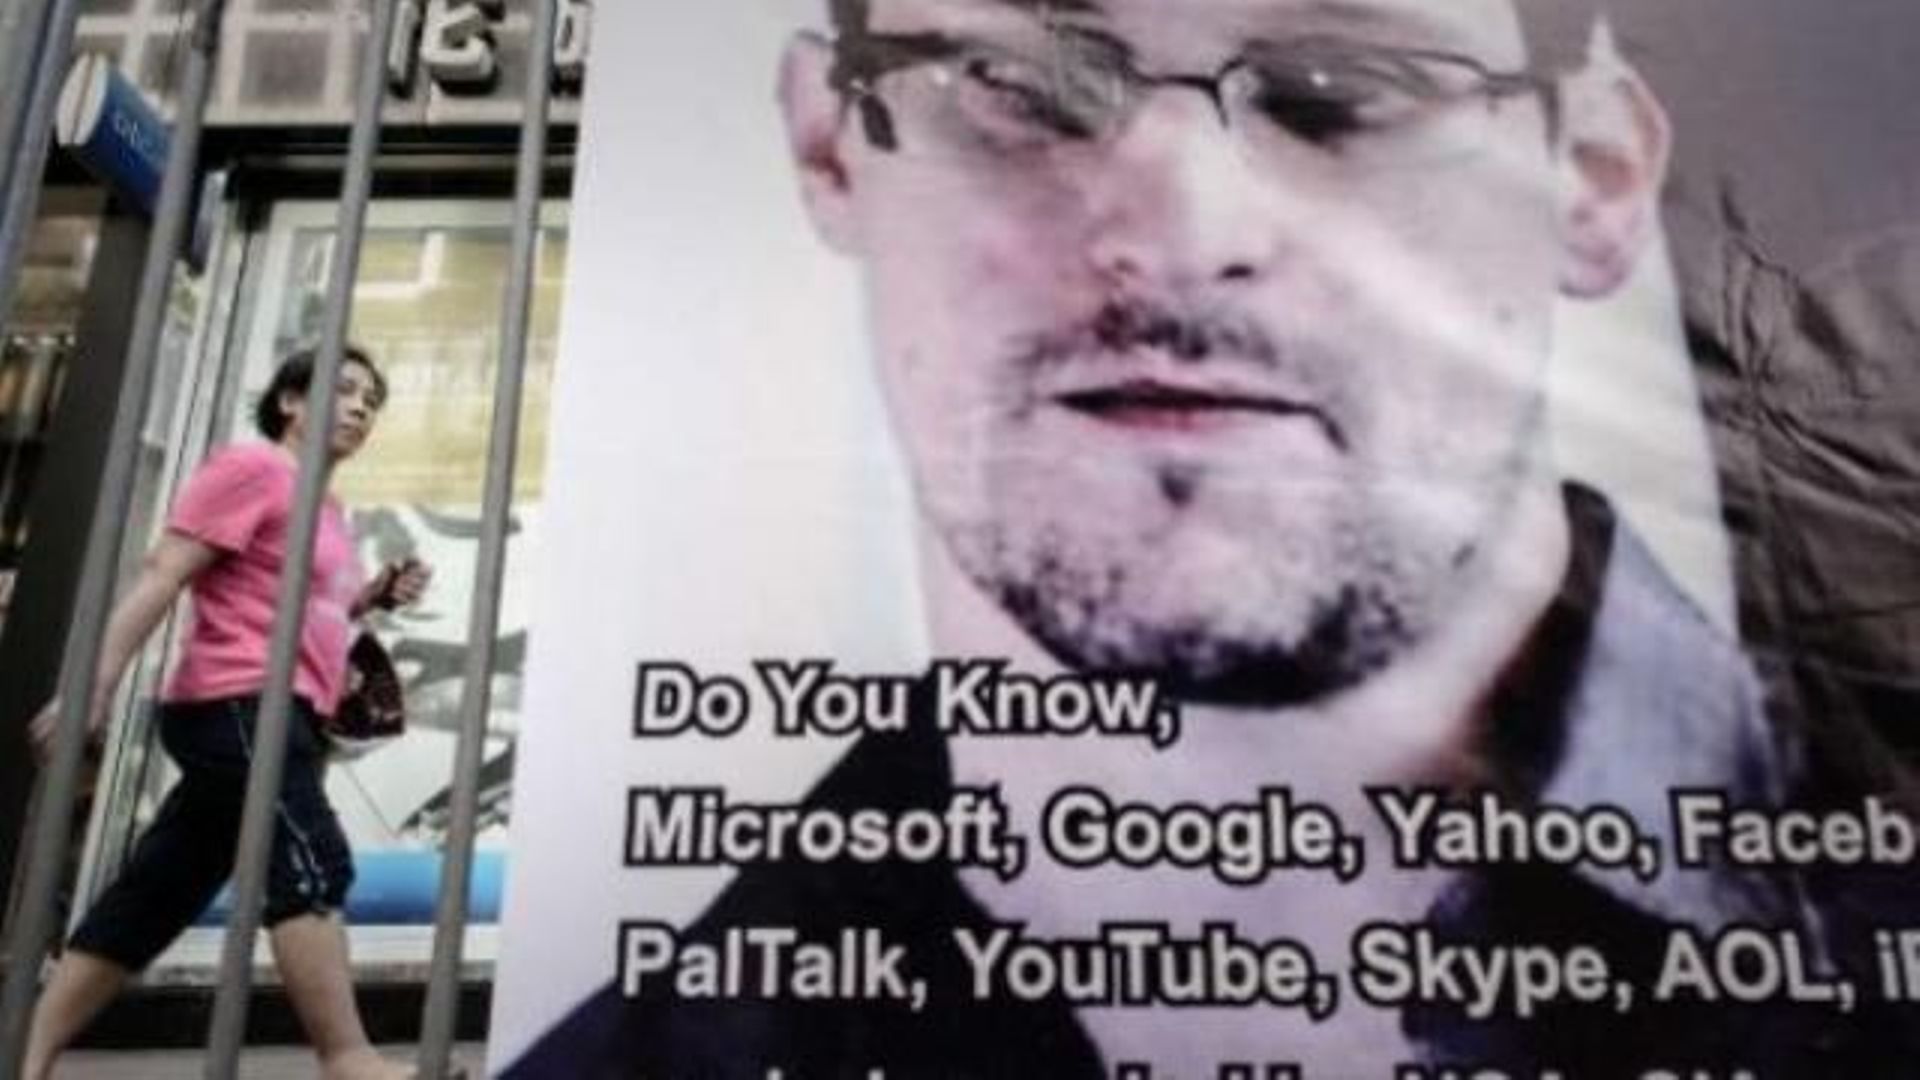 PRISM - L'ex-consultant Edward Snowden inculpé pour espionnage